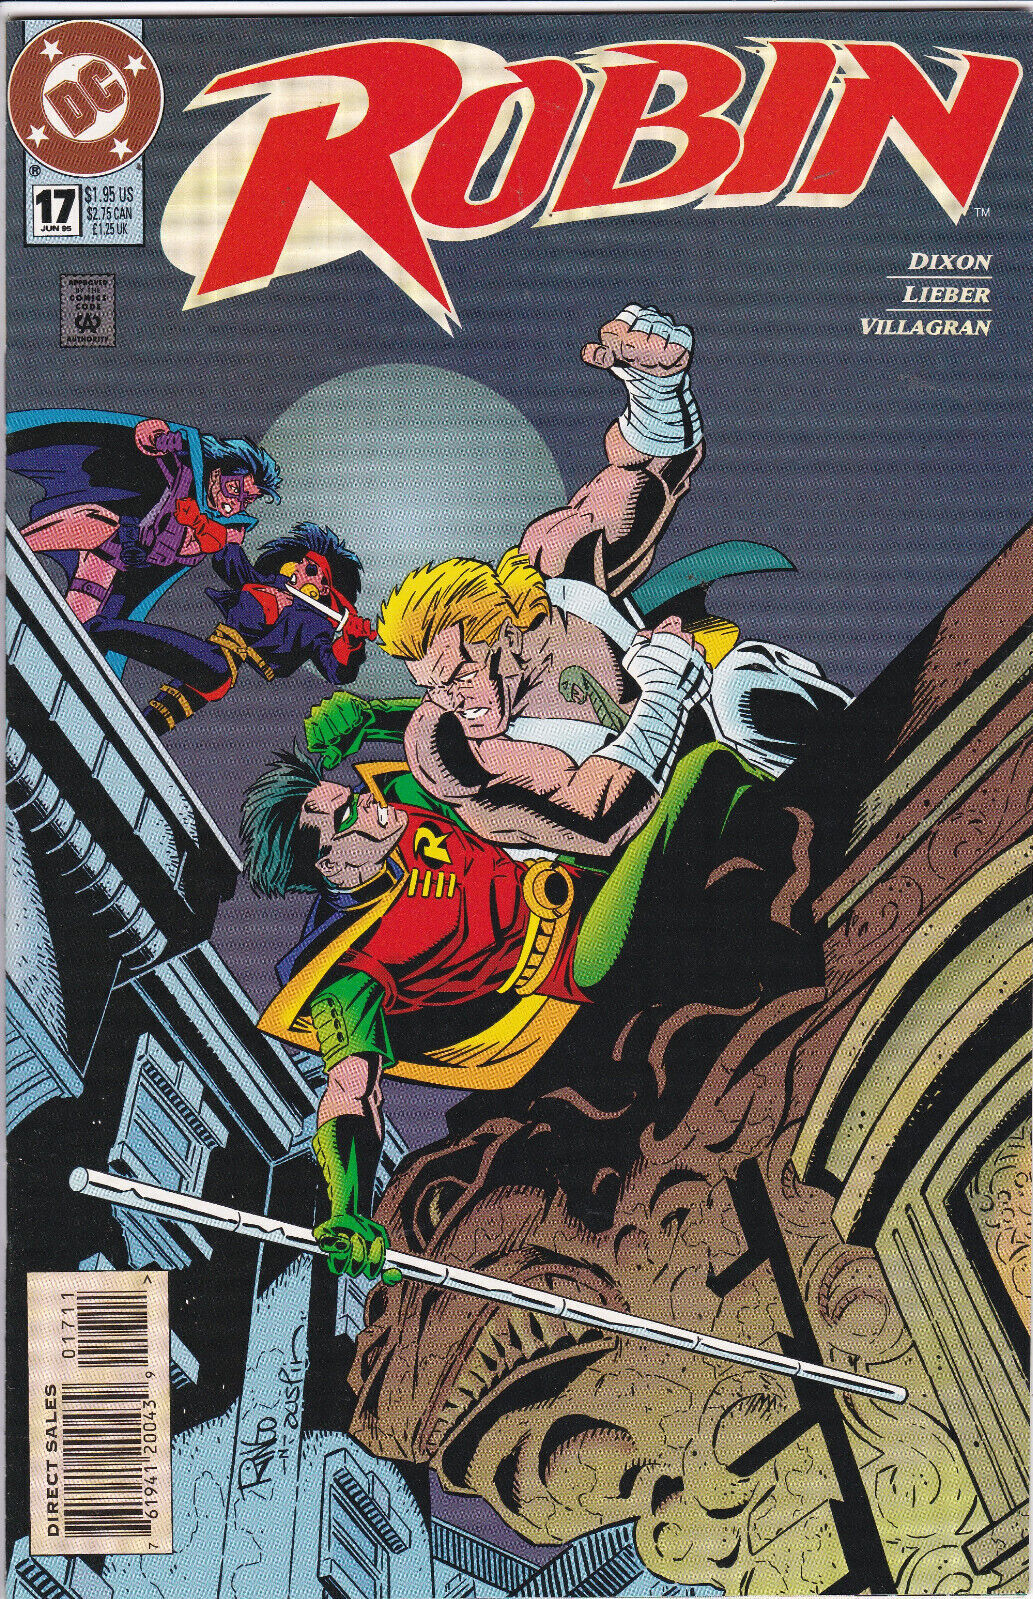 Robin #17, Vol. 2 (1993-2009) DC Comics, High Grade